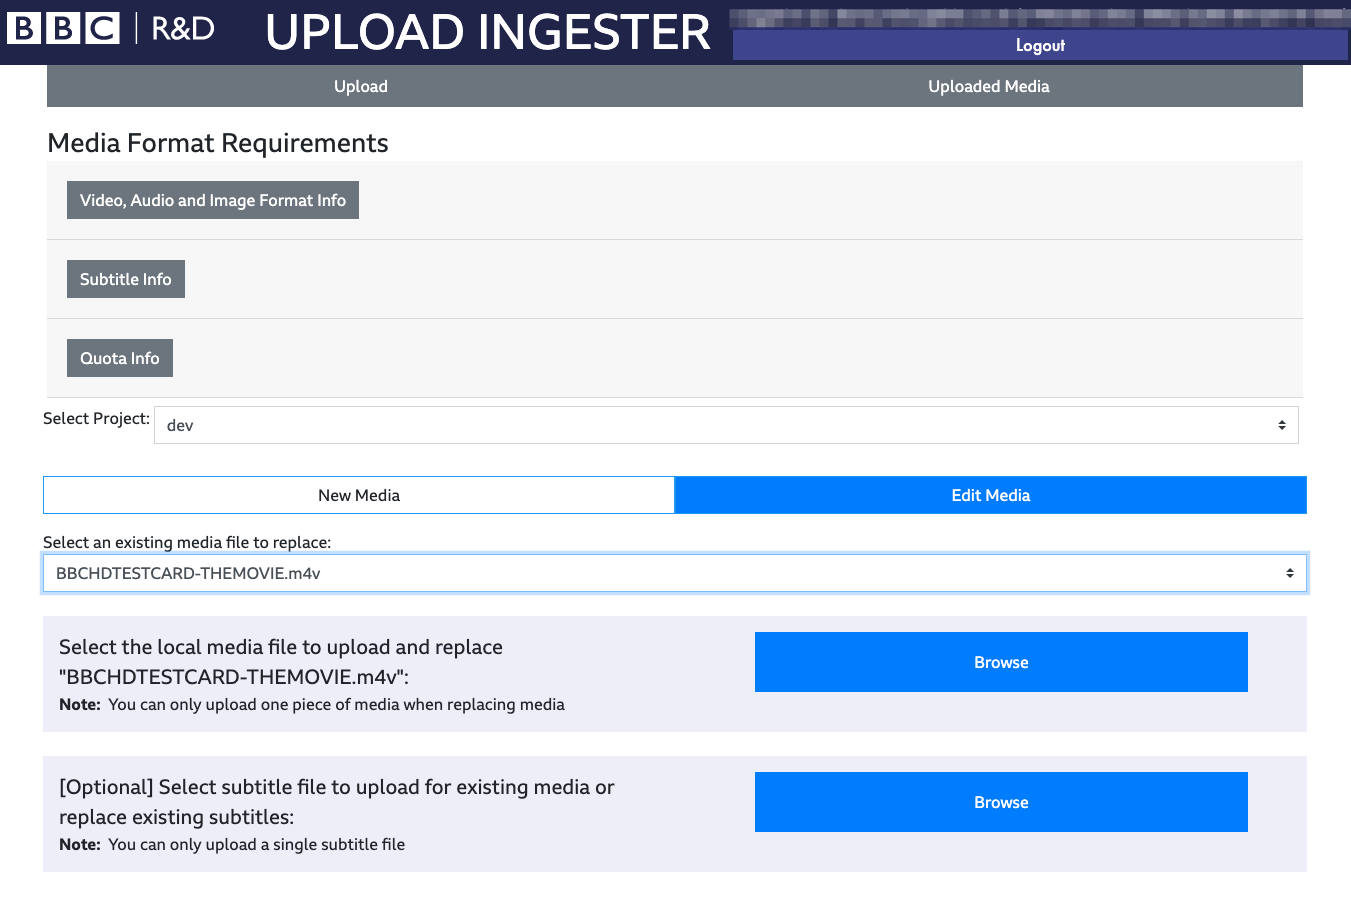 Upload Ingester Progress Bar